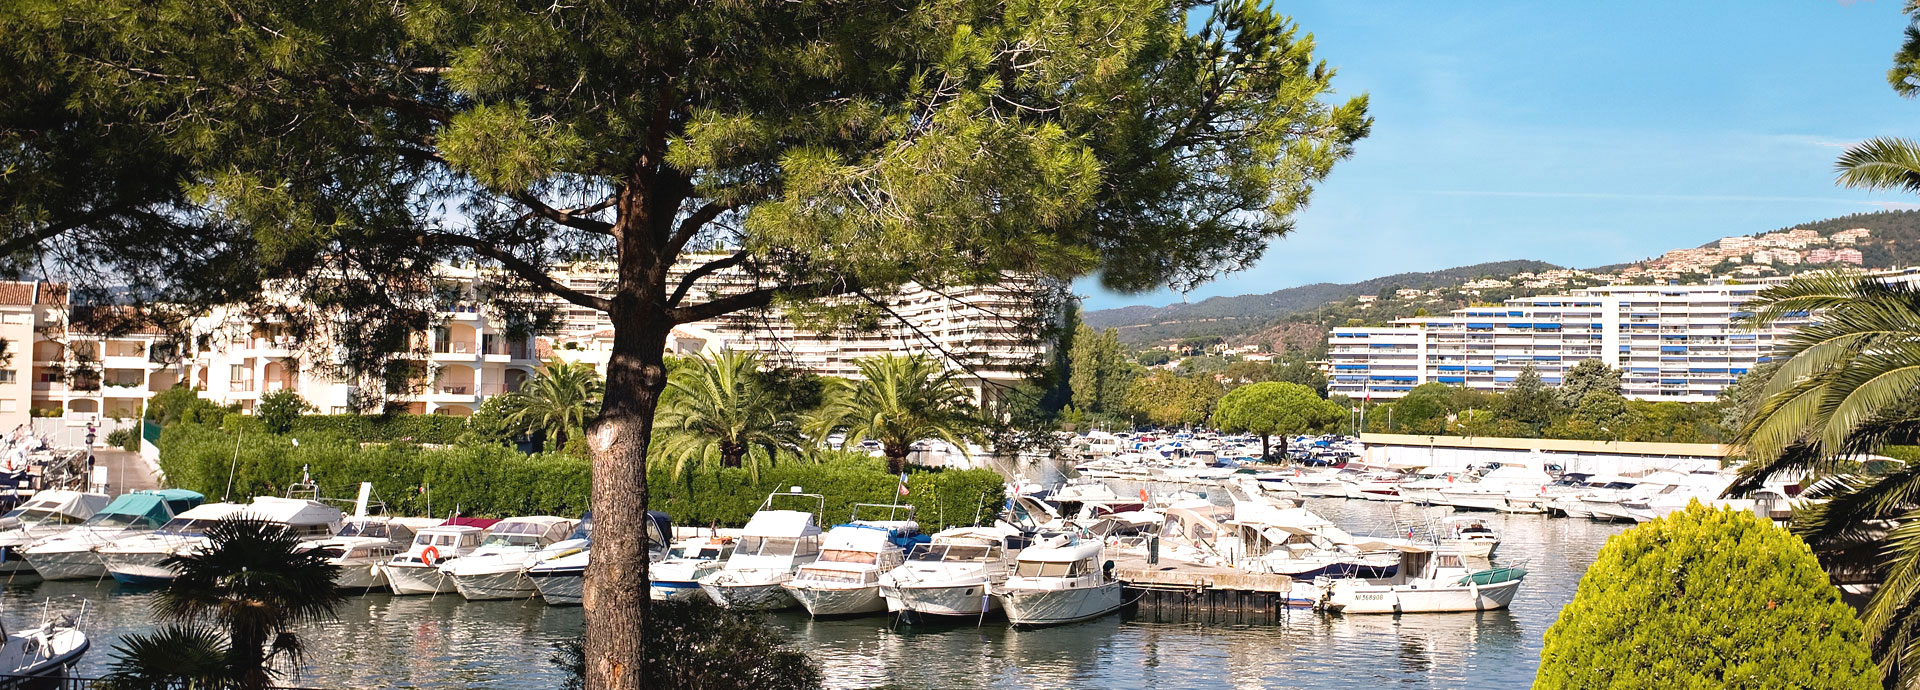 location vacances à Cannes-Mandelieu la Napoule : résidence Carré Marine